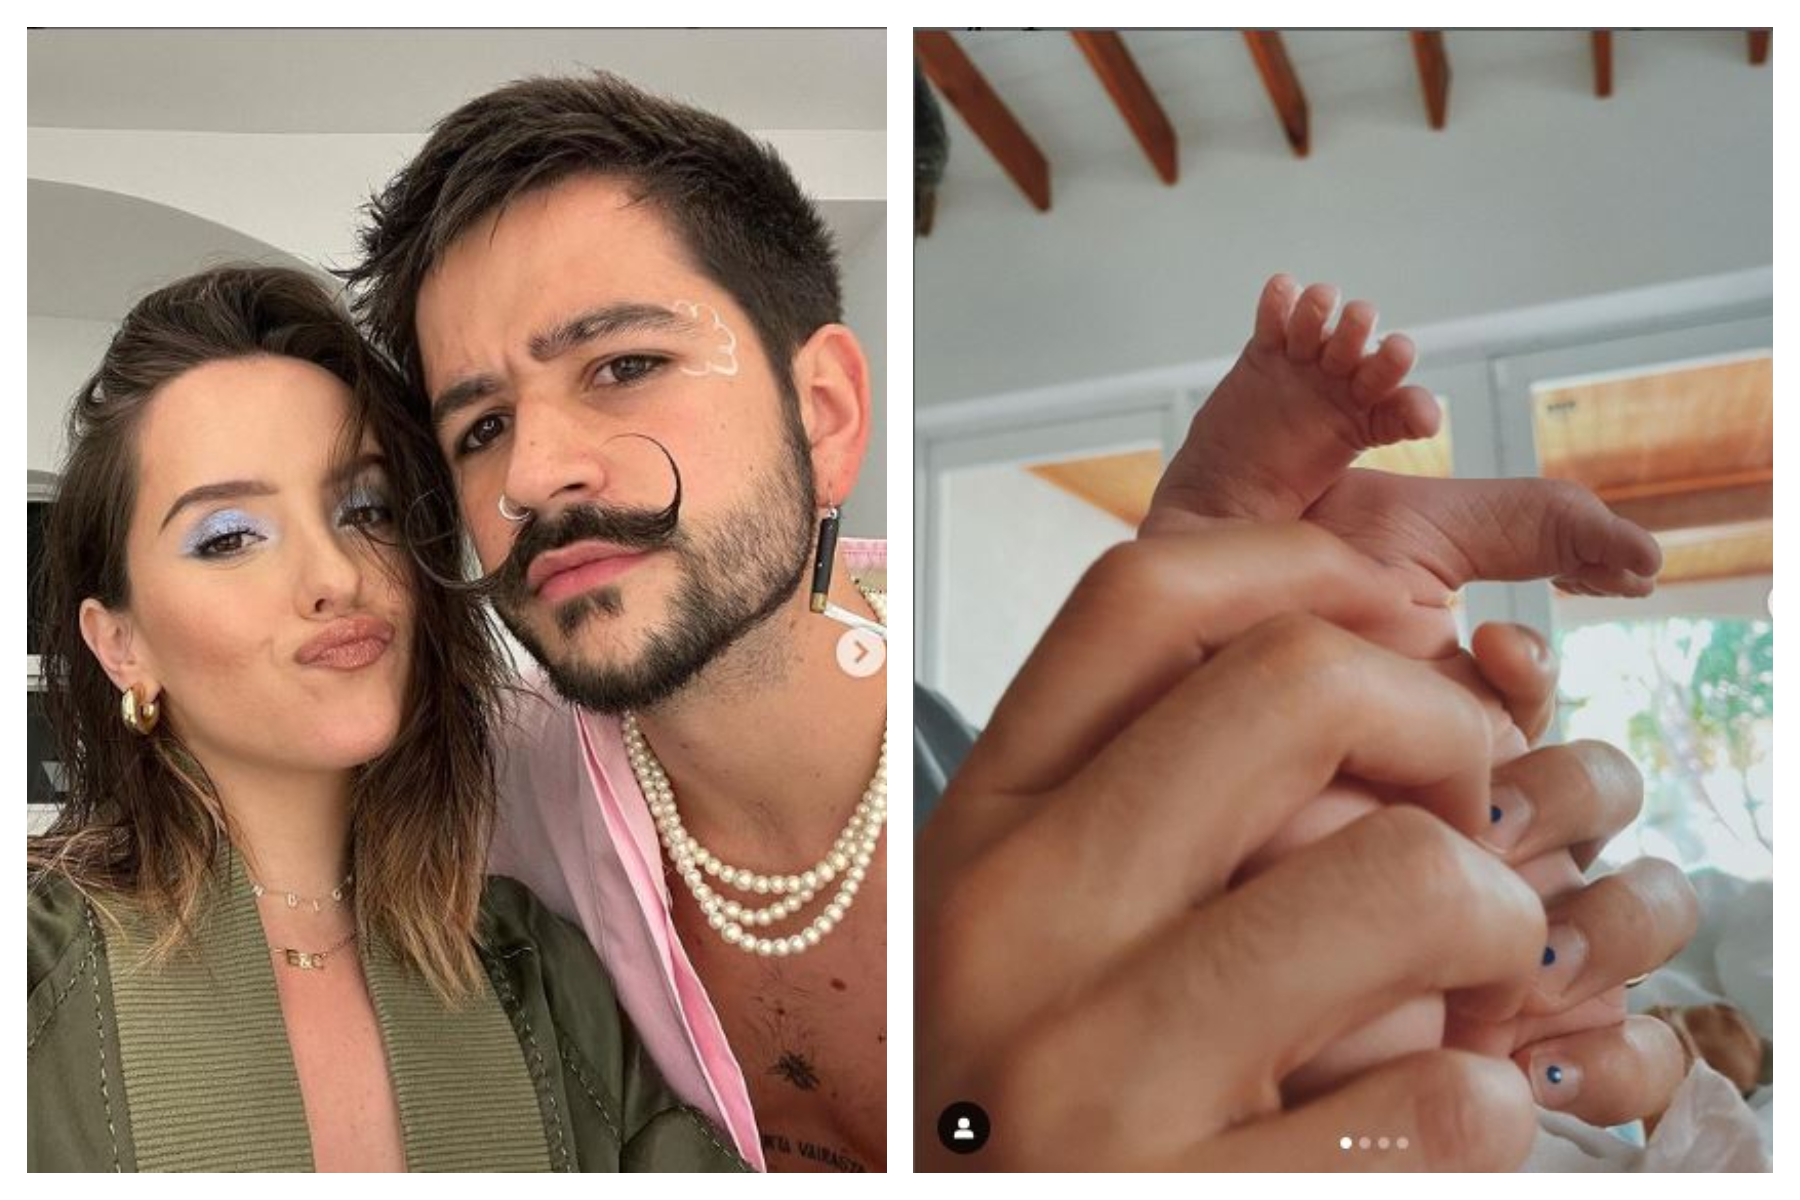 Índigo, la primera hija de Camilo y Evaluna, nació el pasado 6 de abril. (Foto Prensa Libre: Instagram @Camilo @Evaluna).